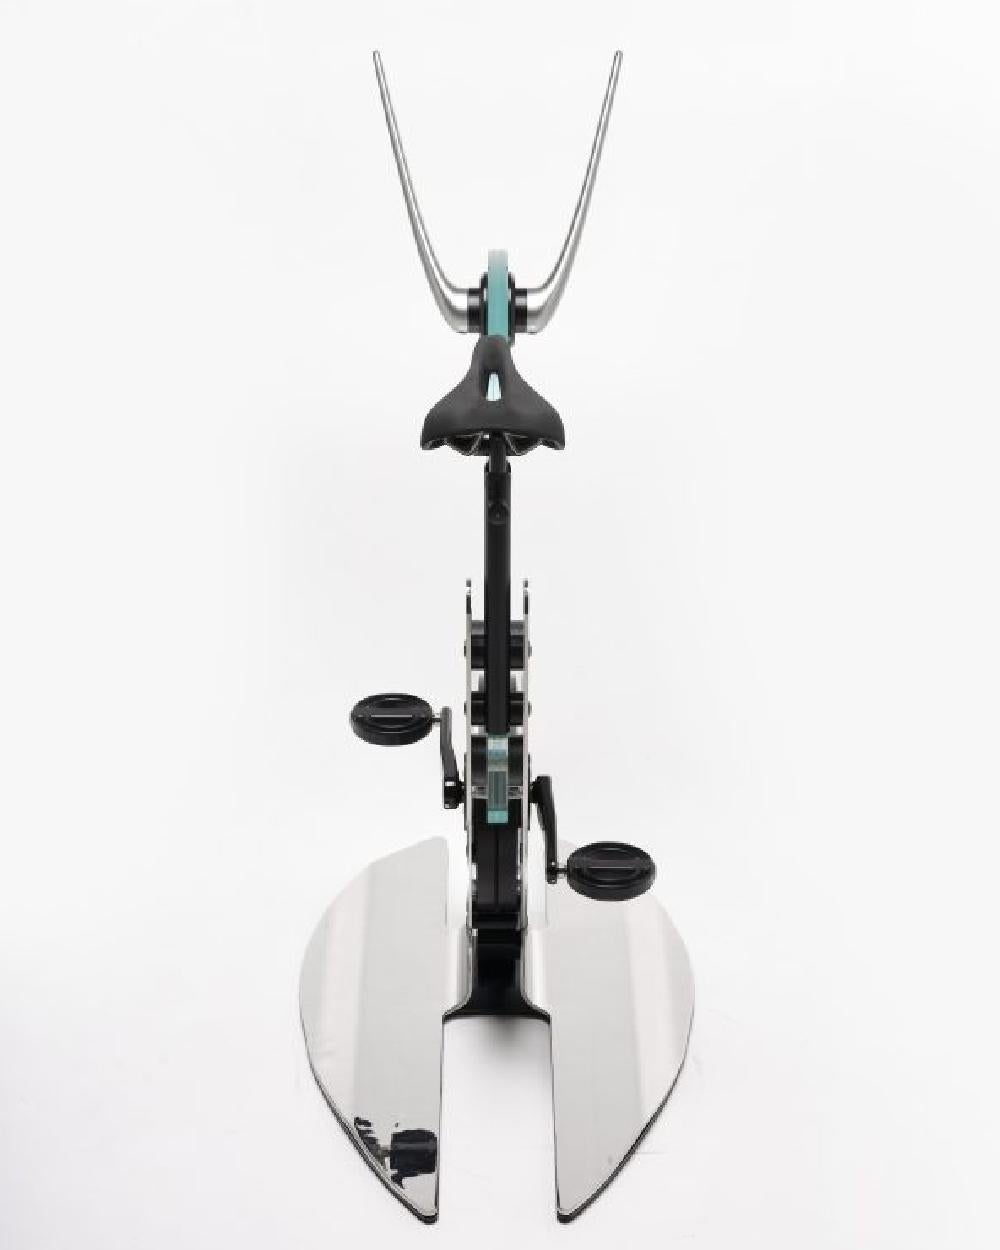 Der Heimtrainer Ciclotte, entworfen von Luca Schieppati und Gianfranco Barban für Teckell, ist Teil der Fitness-Kollektion. Das Fahrrad ist mit einer Kristallscheibe und einem verchromten oder schwarzen Carbonrahmen ausgestattet. Die Ergonomie